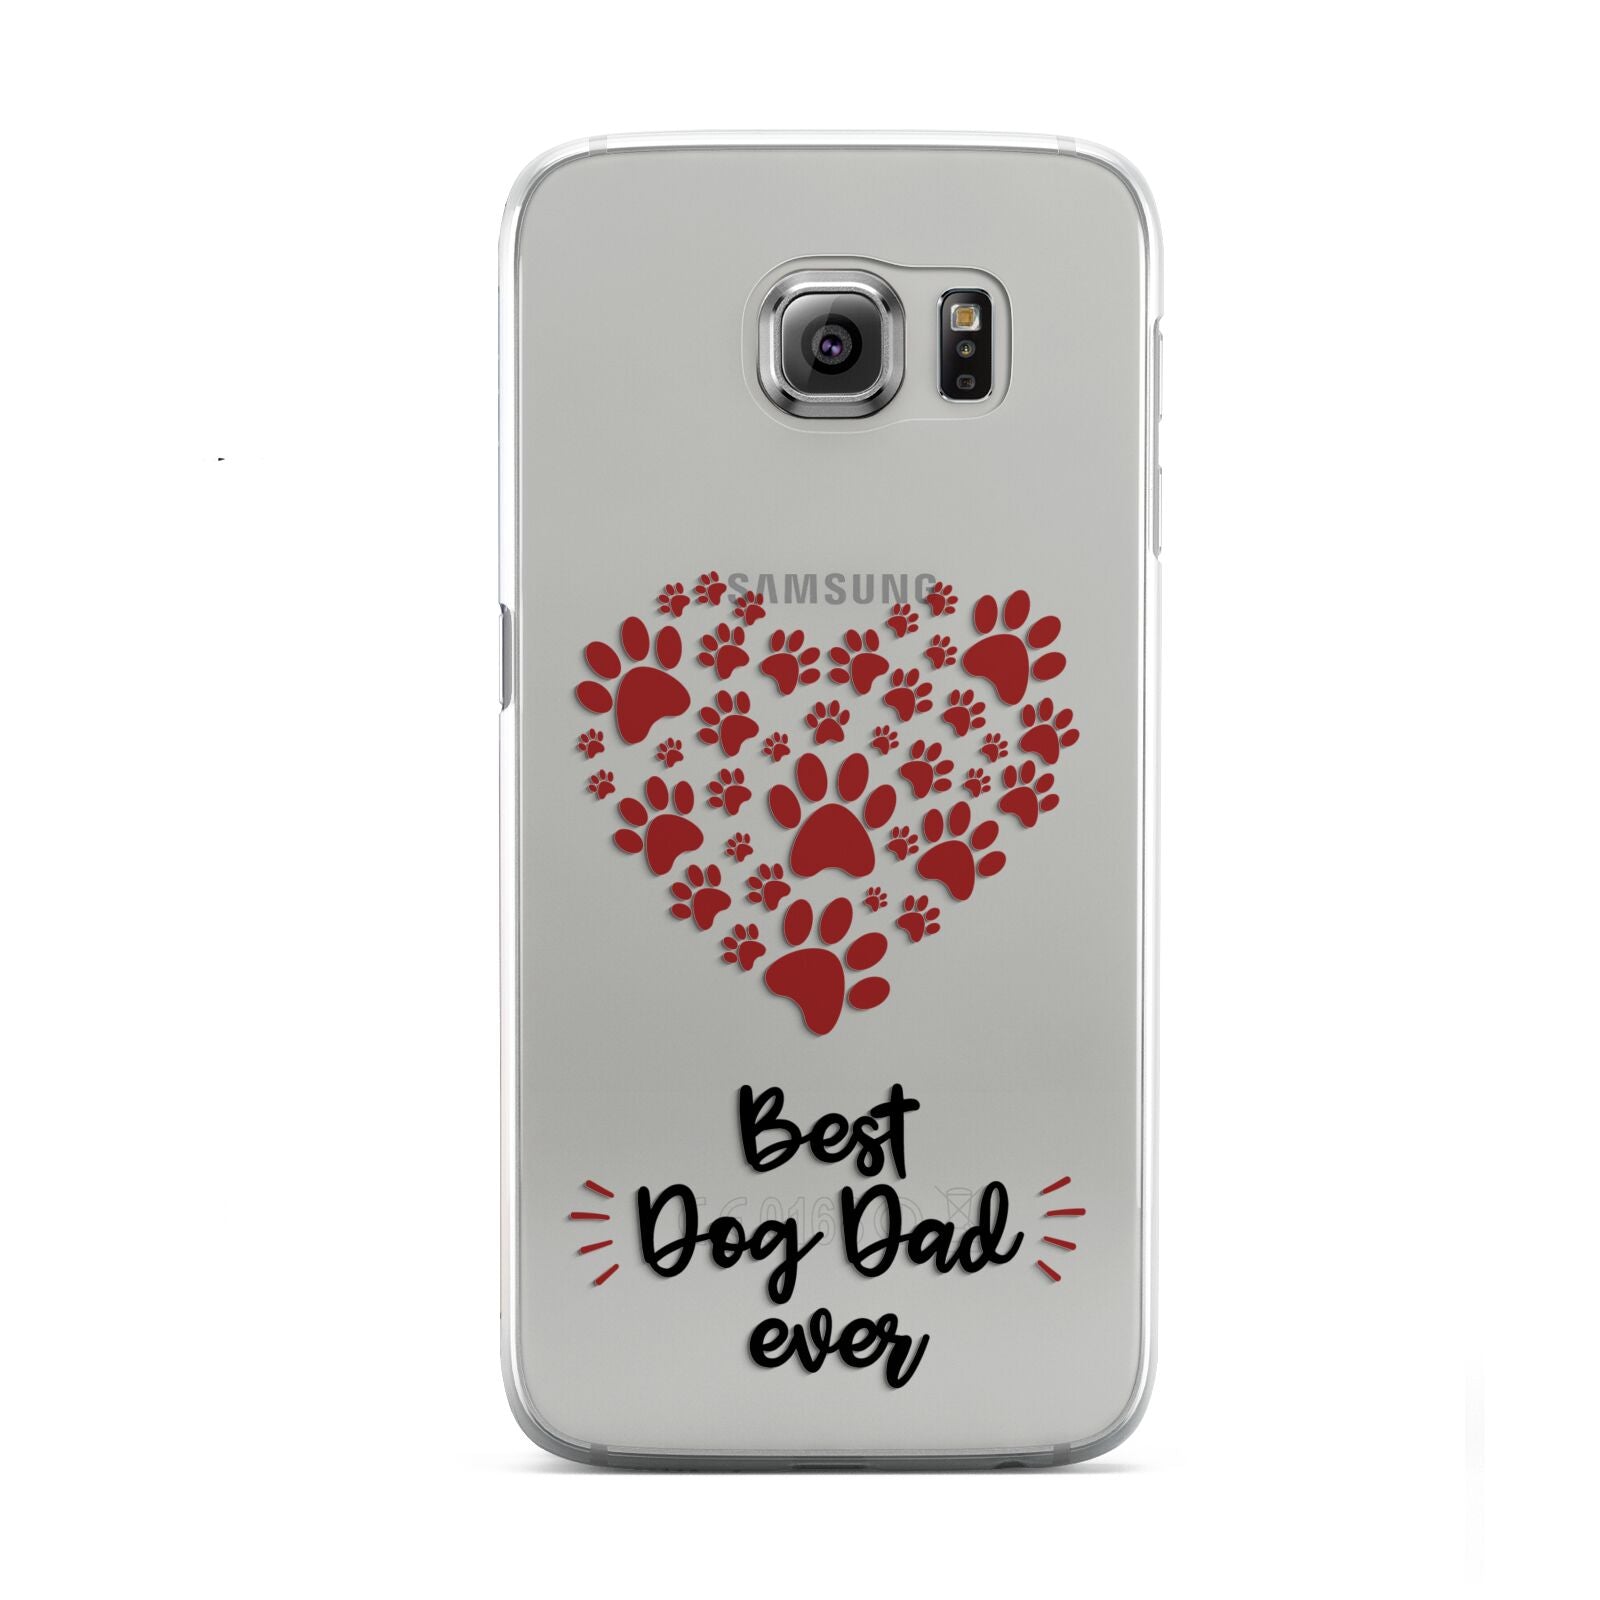 Best Dog Dad Paws Samsung Galaxy S6 Case